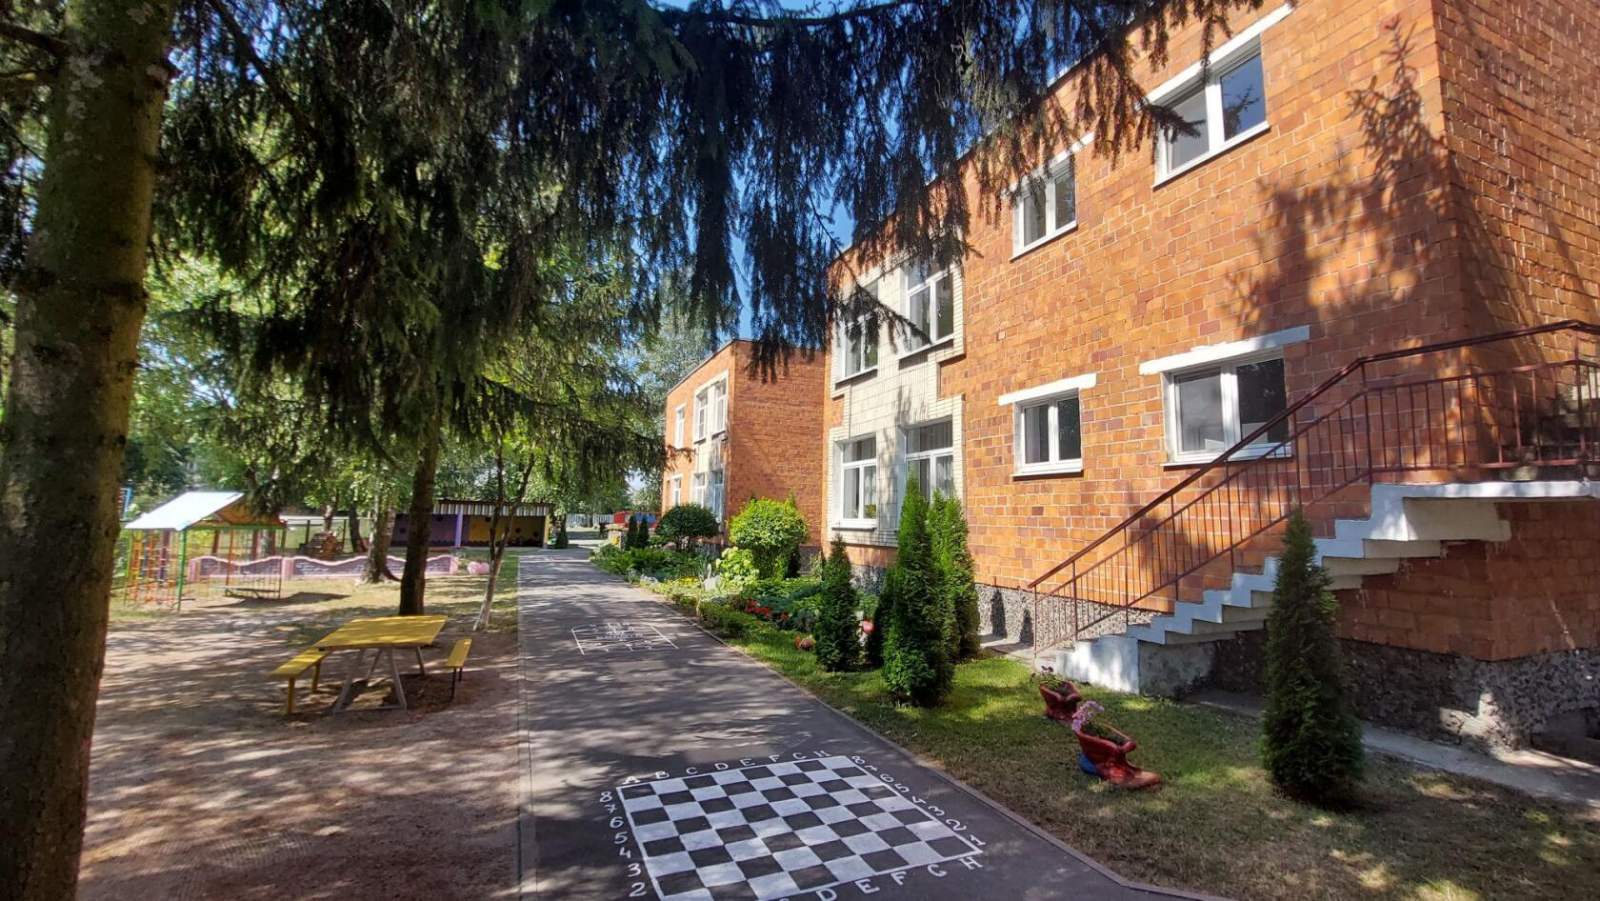 Пинковичский детский сад признан лучшим в Брестской области